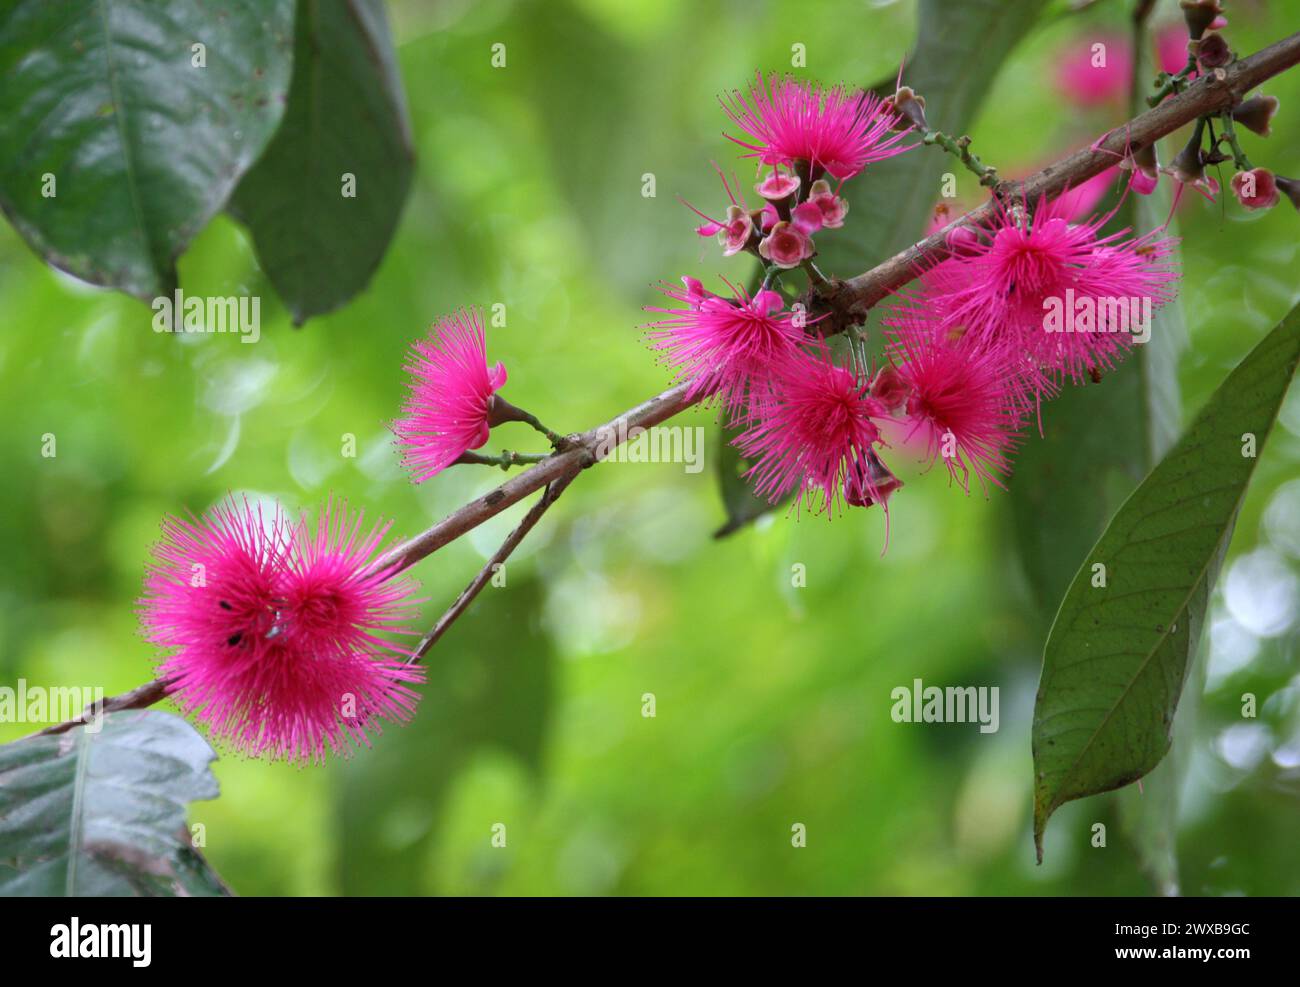 Fiori della mela malese o della mela rosa, Syzygium malaccense (malacensis), Myrtaceae. Costa Rica. Syzygium malaccense è una specie di albero fiorito. Foto Stock